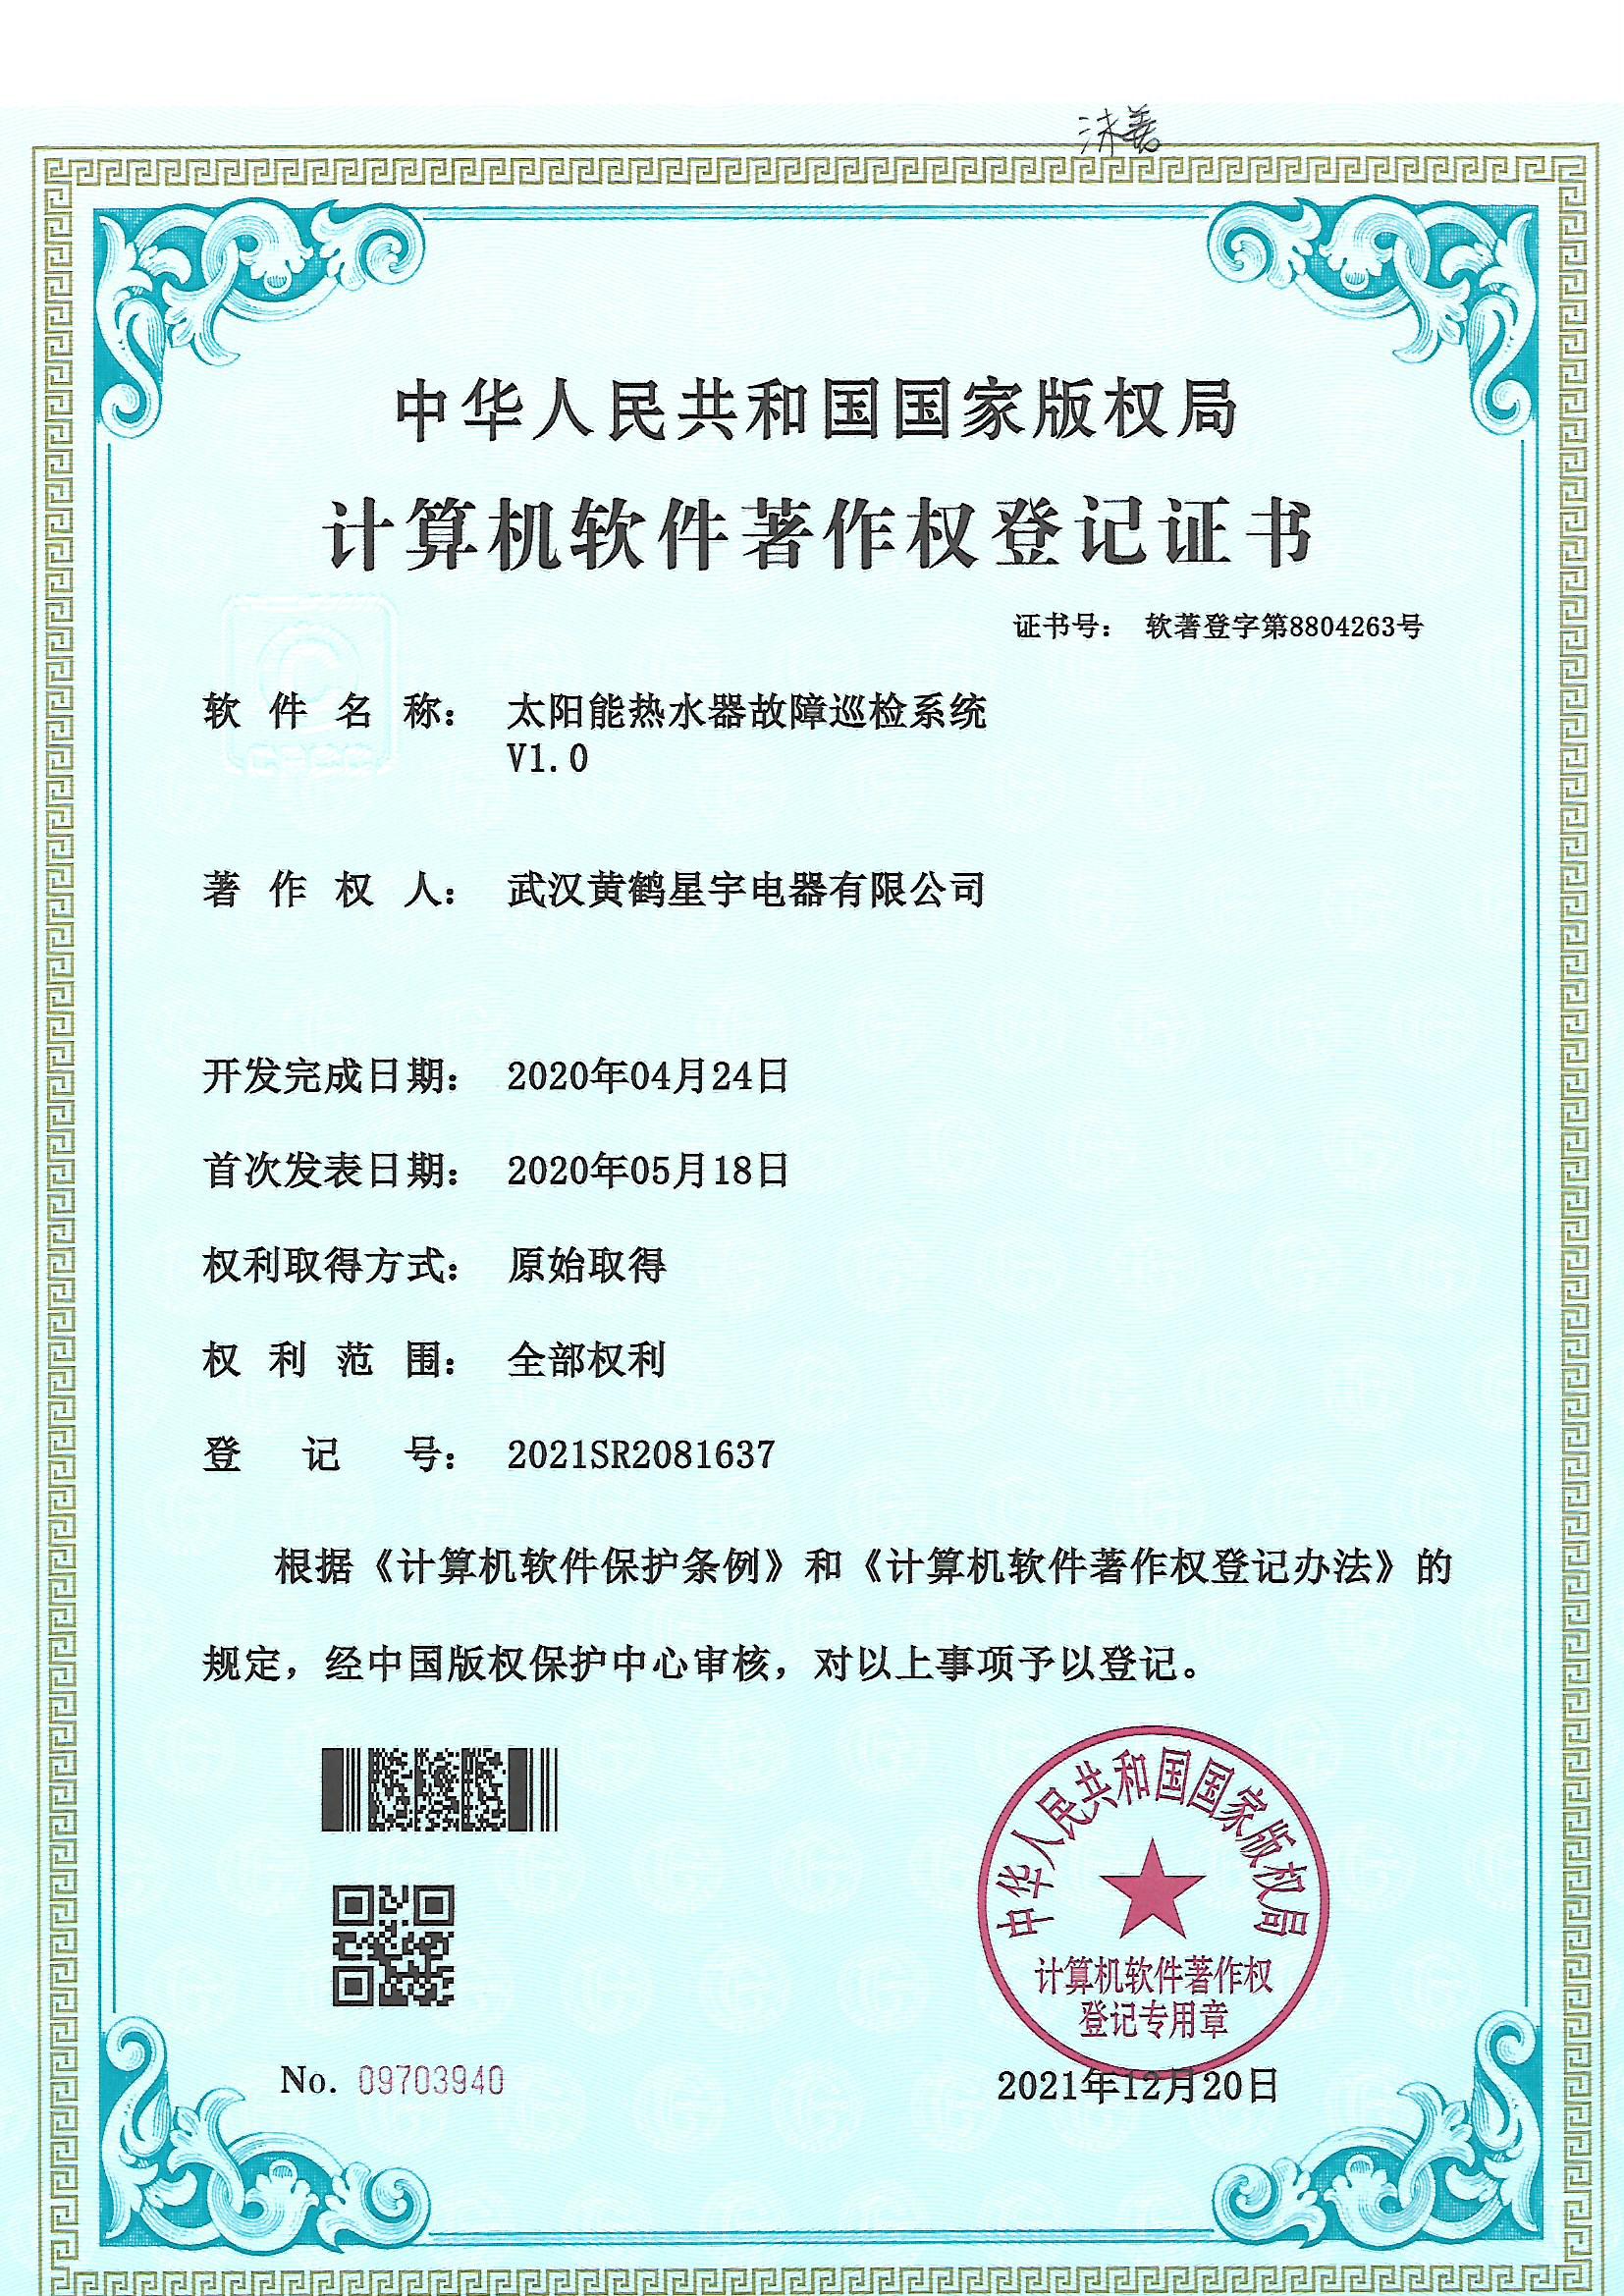 武漢凯发官网注册電器有限公司--下载凯发K8計算機軟件著作權登記證書